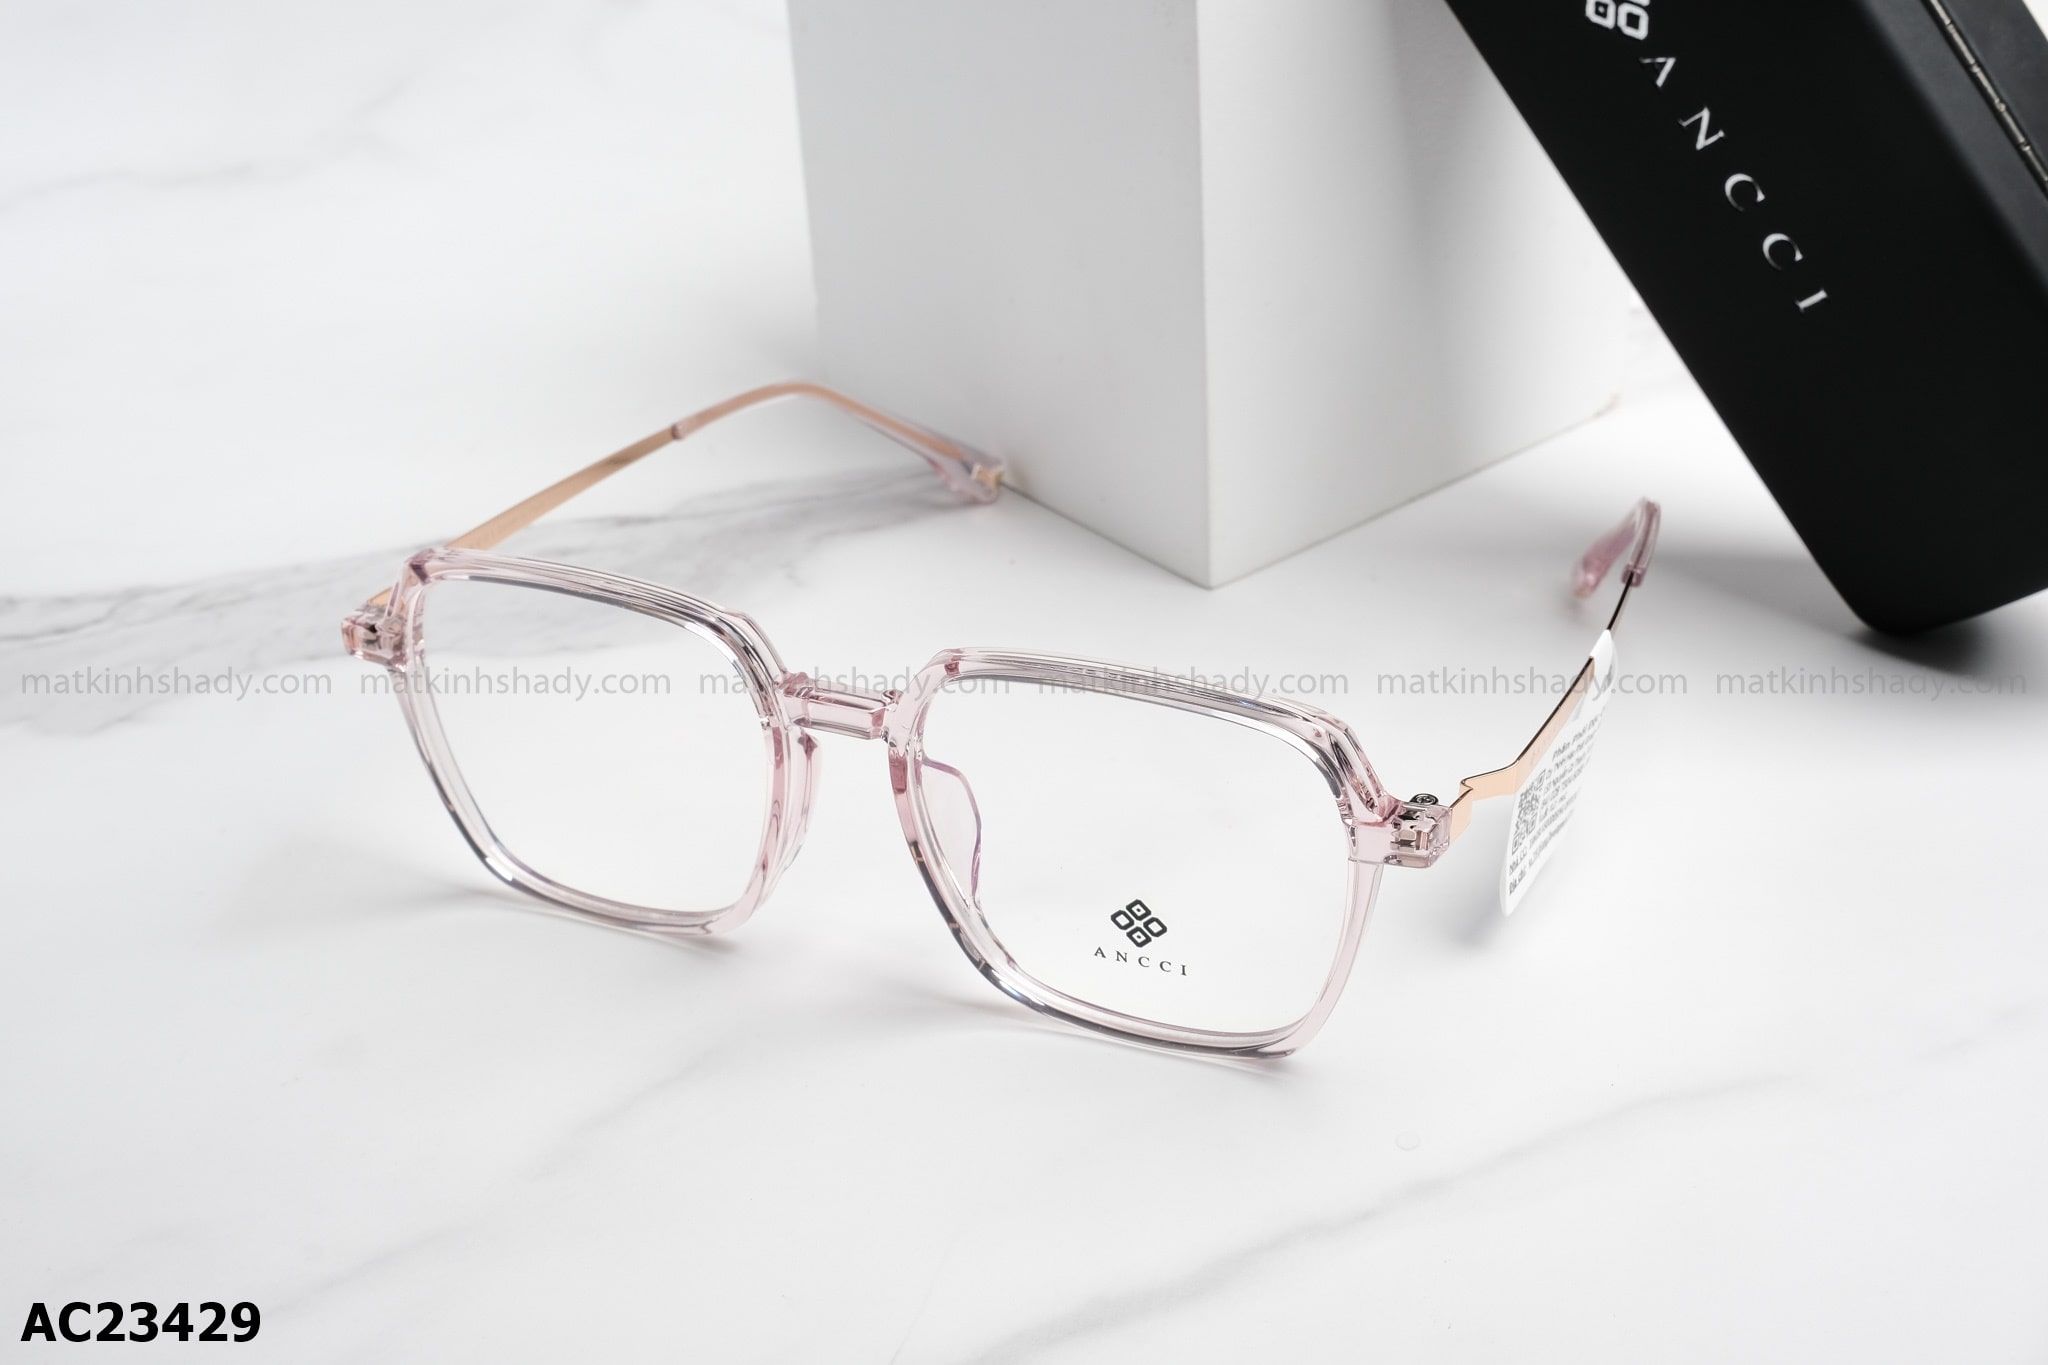  ANCCI Eyewear - Glasses - AC23429 